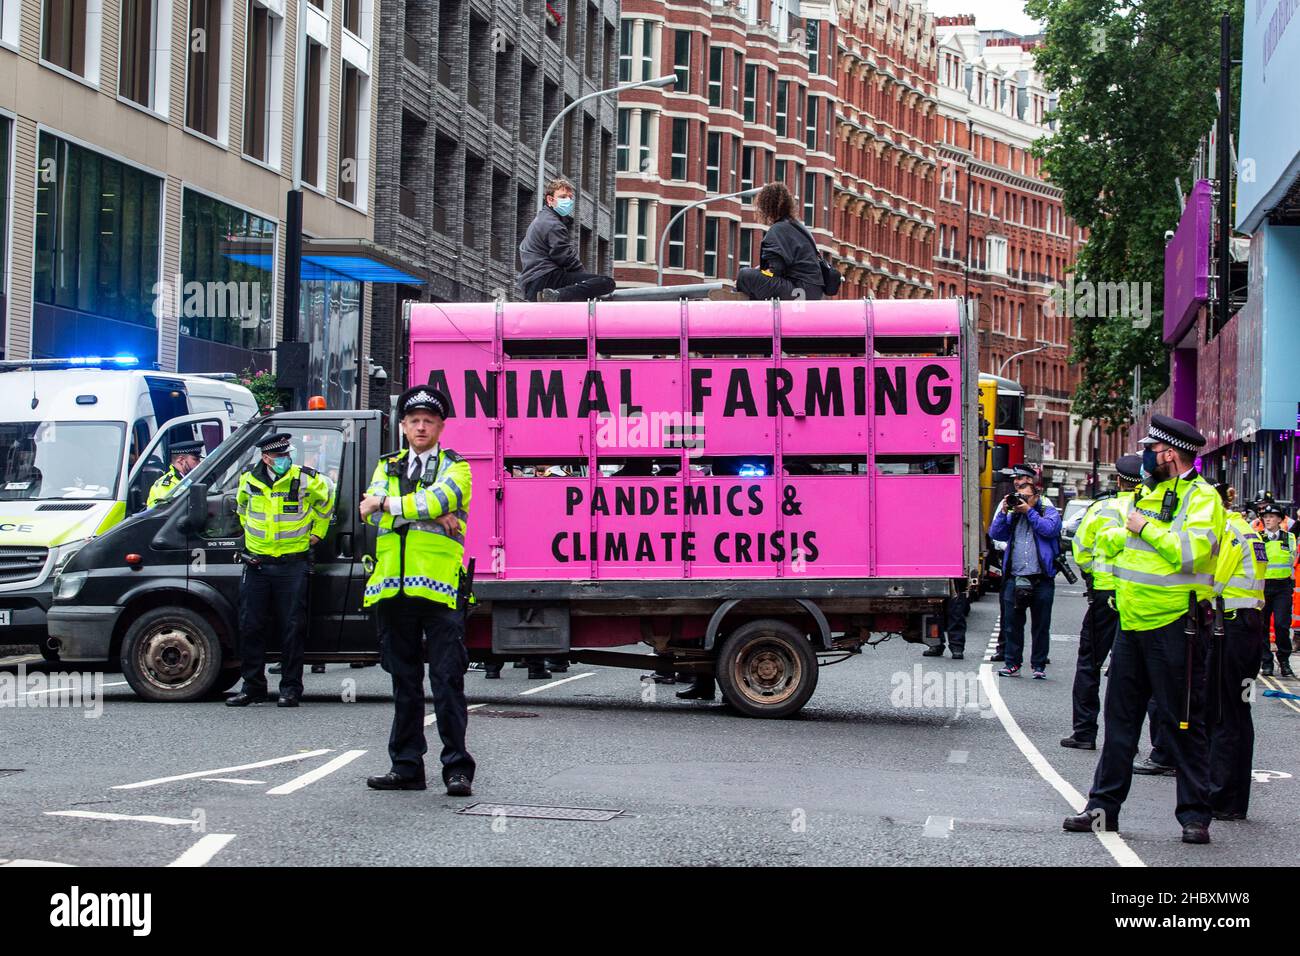 Tieraufstände Demonstranten auf rosafarbenem Schlachthof-LKW mit Polizei Tierhaltung entspricht Pandemien und Klimakrise London 2020 Stockfoto